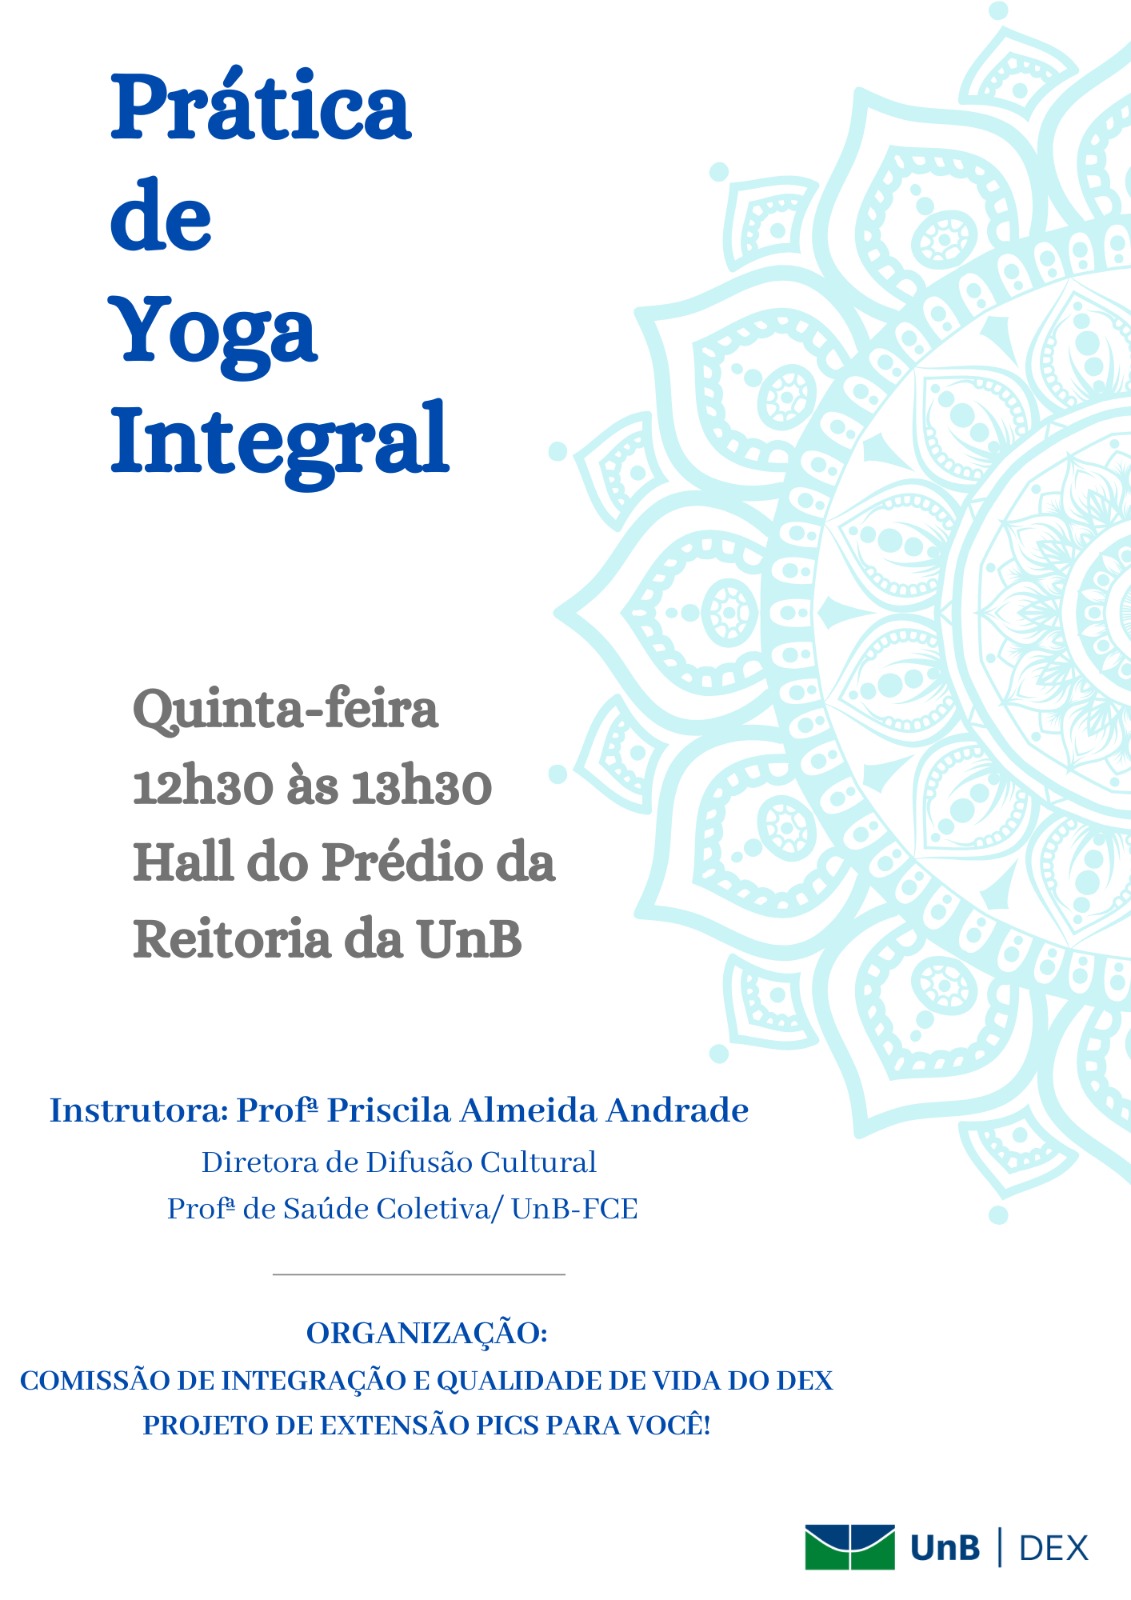 Prática de Yoga Integral